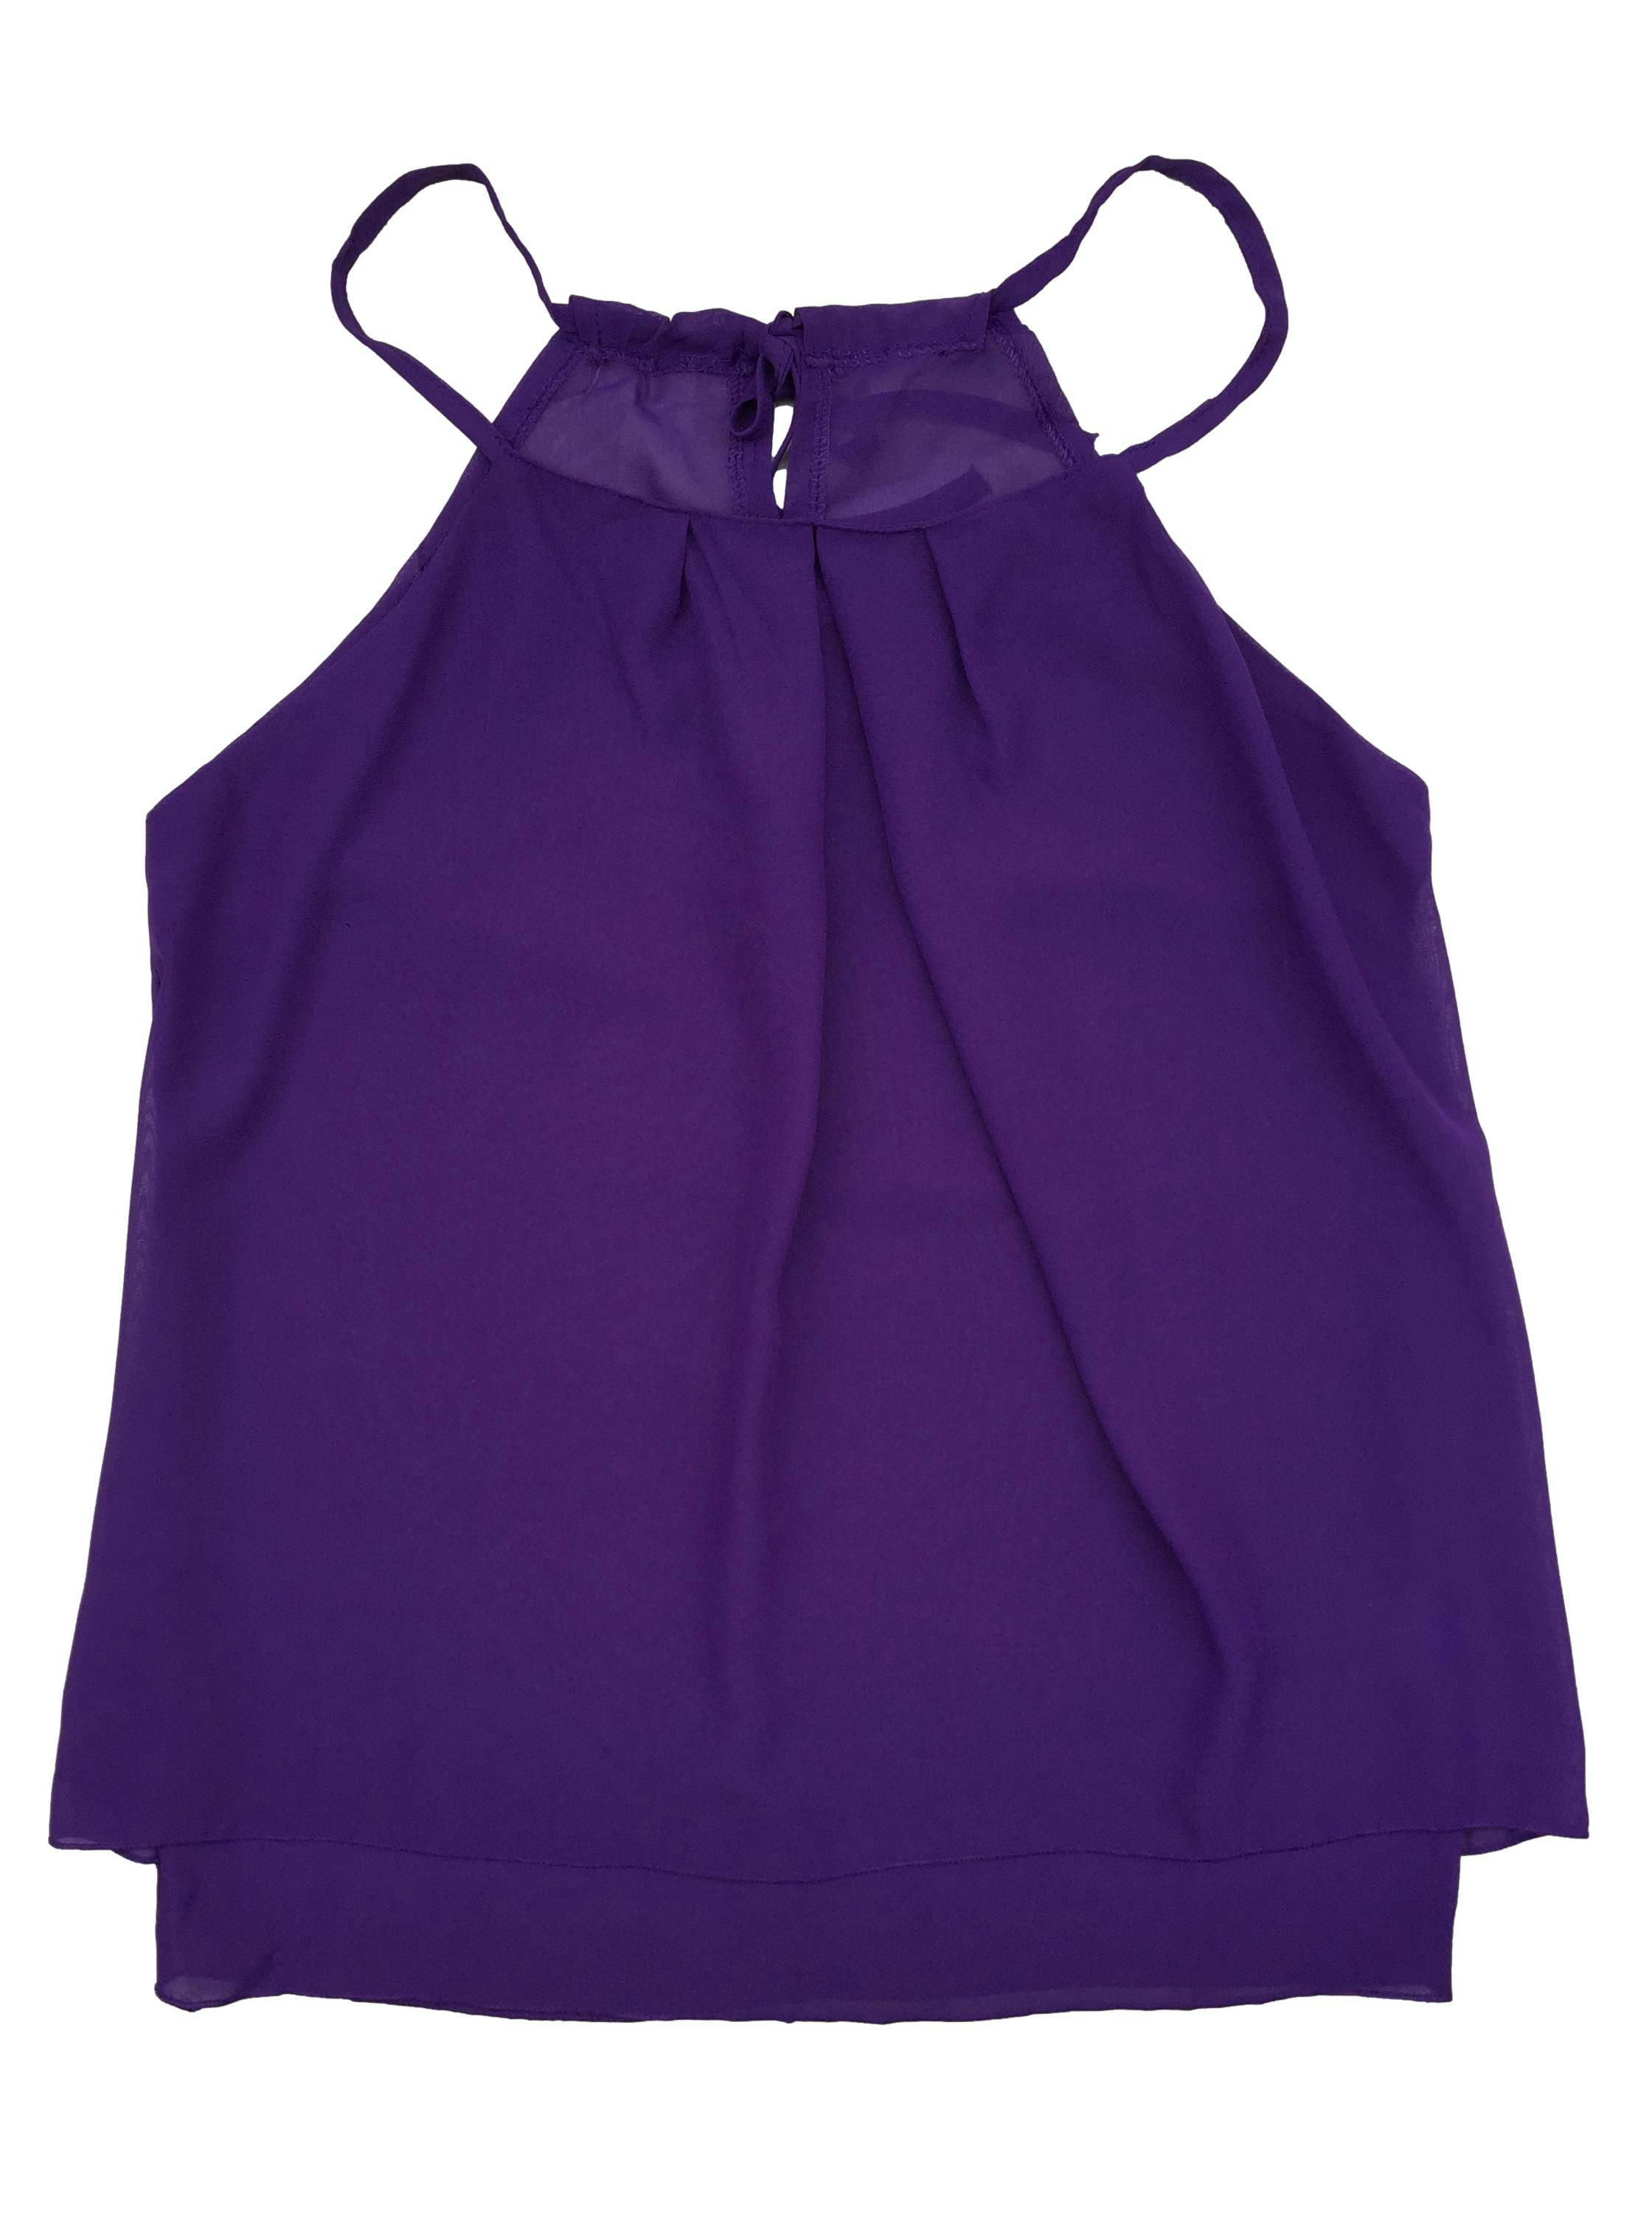 Blusa violeta de gasa con forro y cordón en el cuello para regular. Busto: 94cm, Largo: 72cm